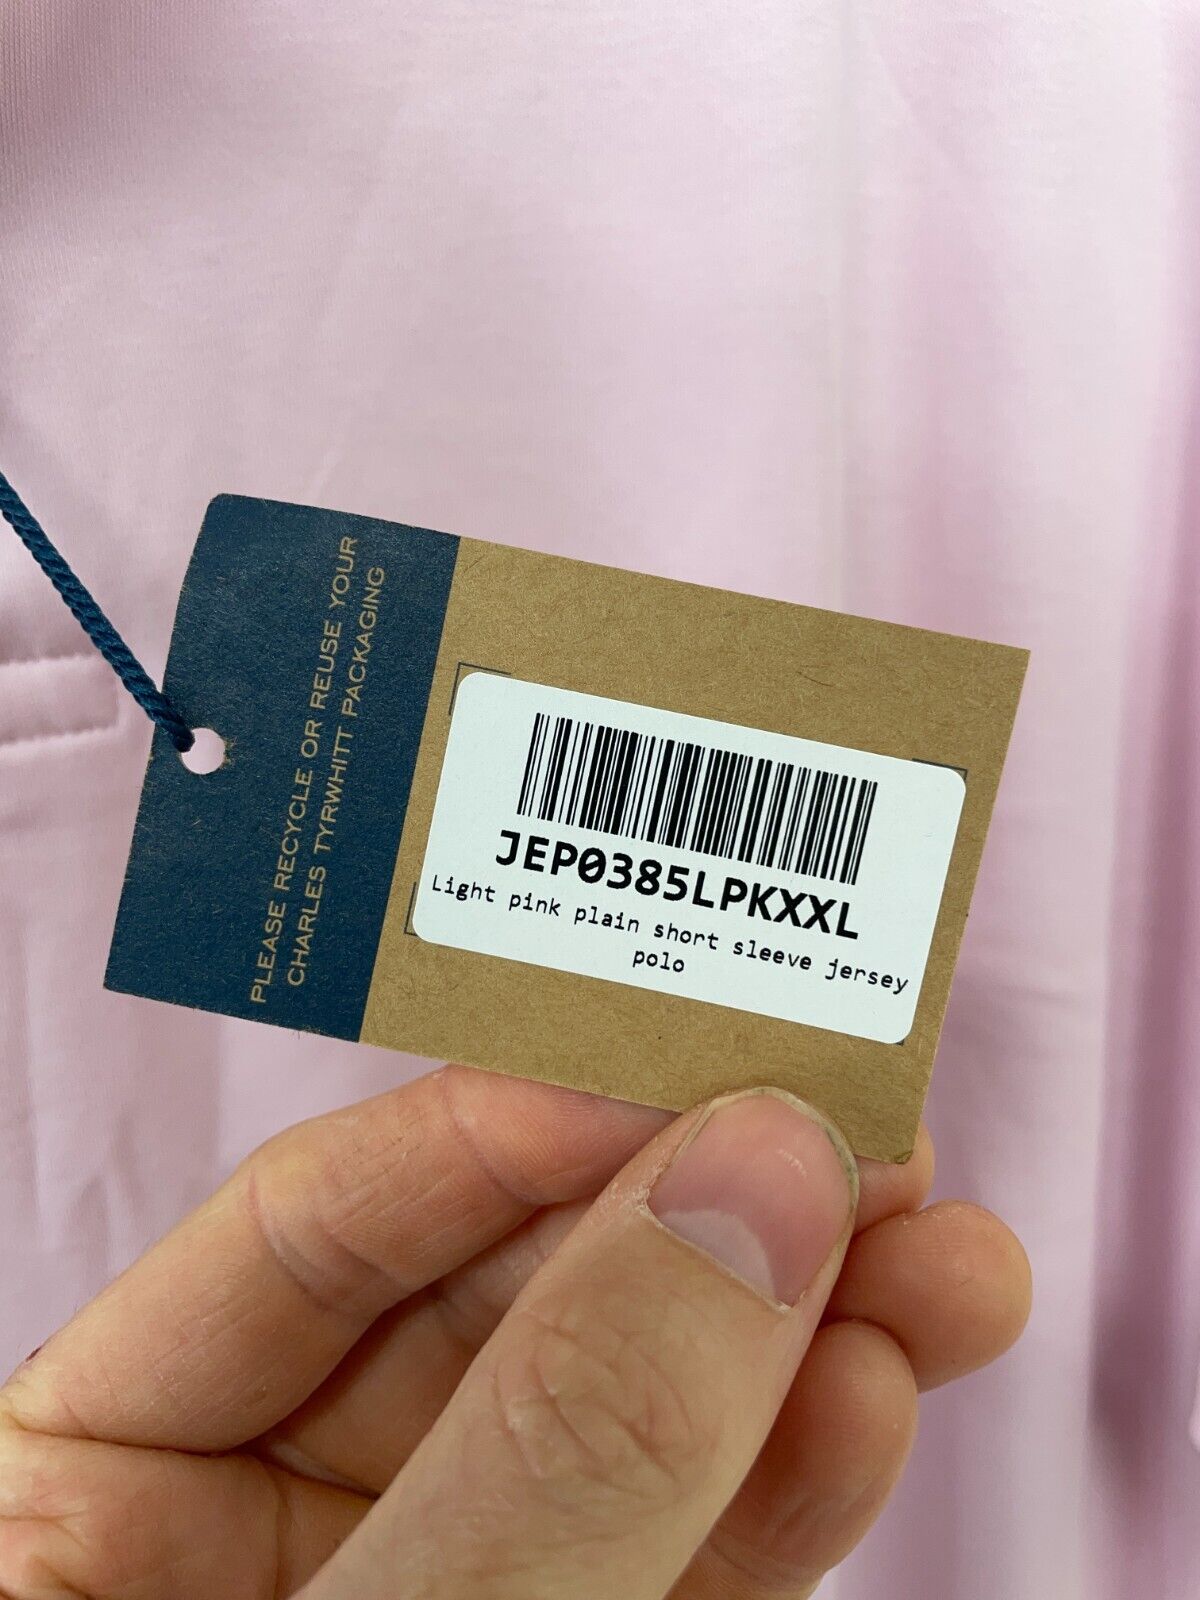 Charles Tyrwhitt Mens XXL Smart Jersey Polo Shirt Golf Light Pink Short Sleeve